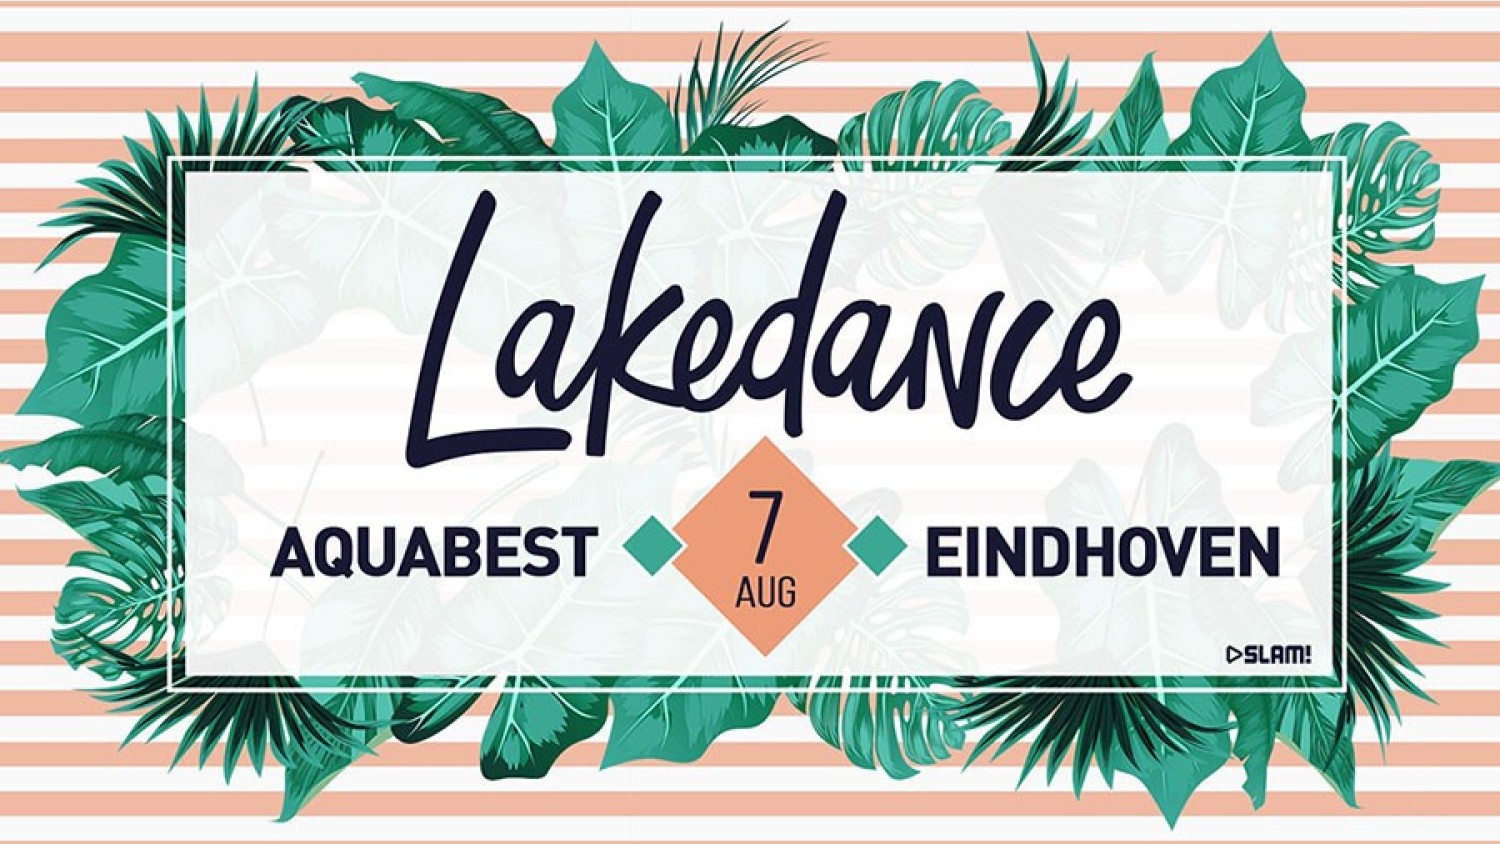 Party nieuws: Blok zaterdag 7 augustus voor Lakedance 2021